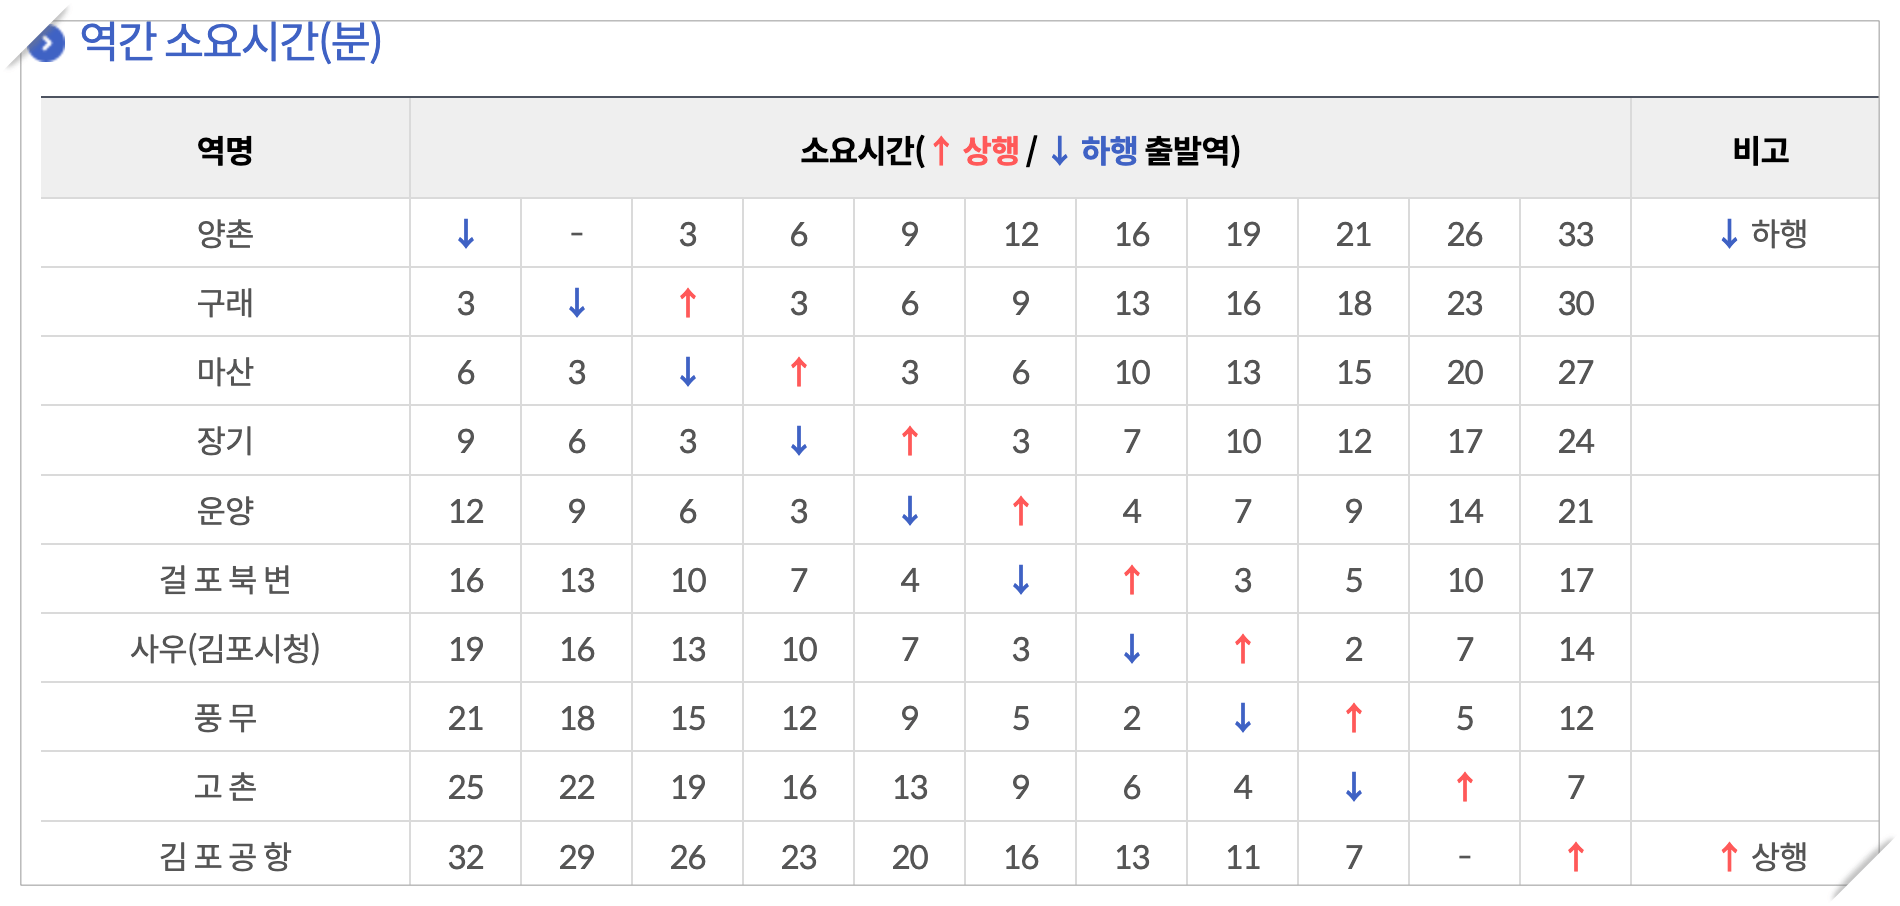 김포 지하철 노선도 상행 시간표